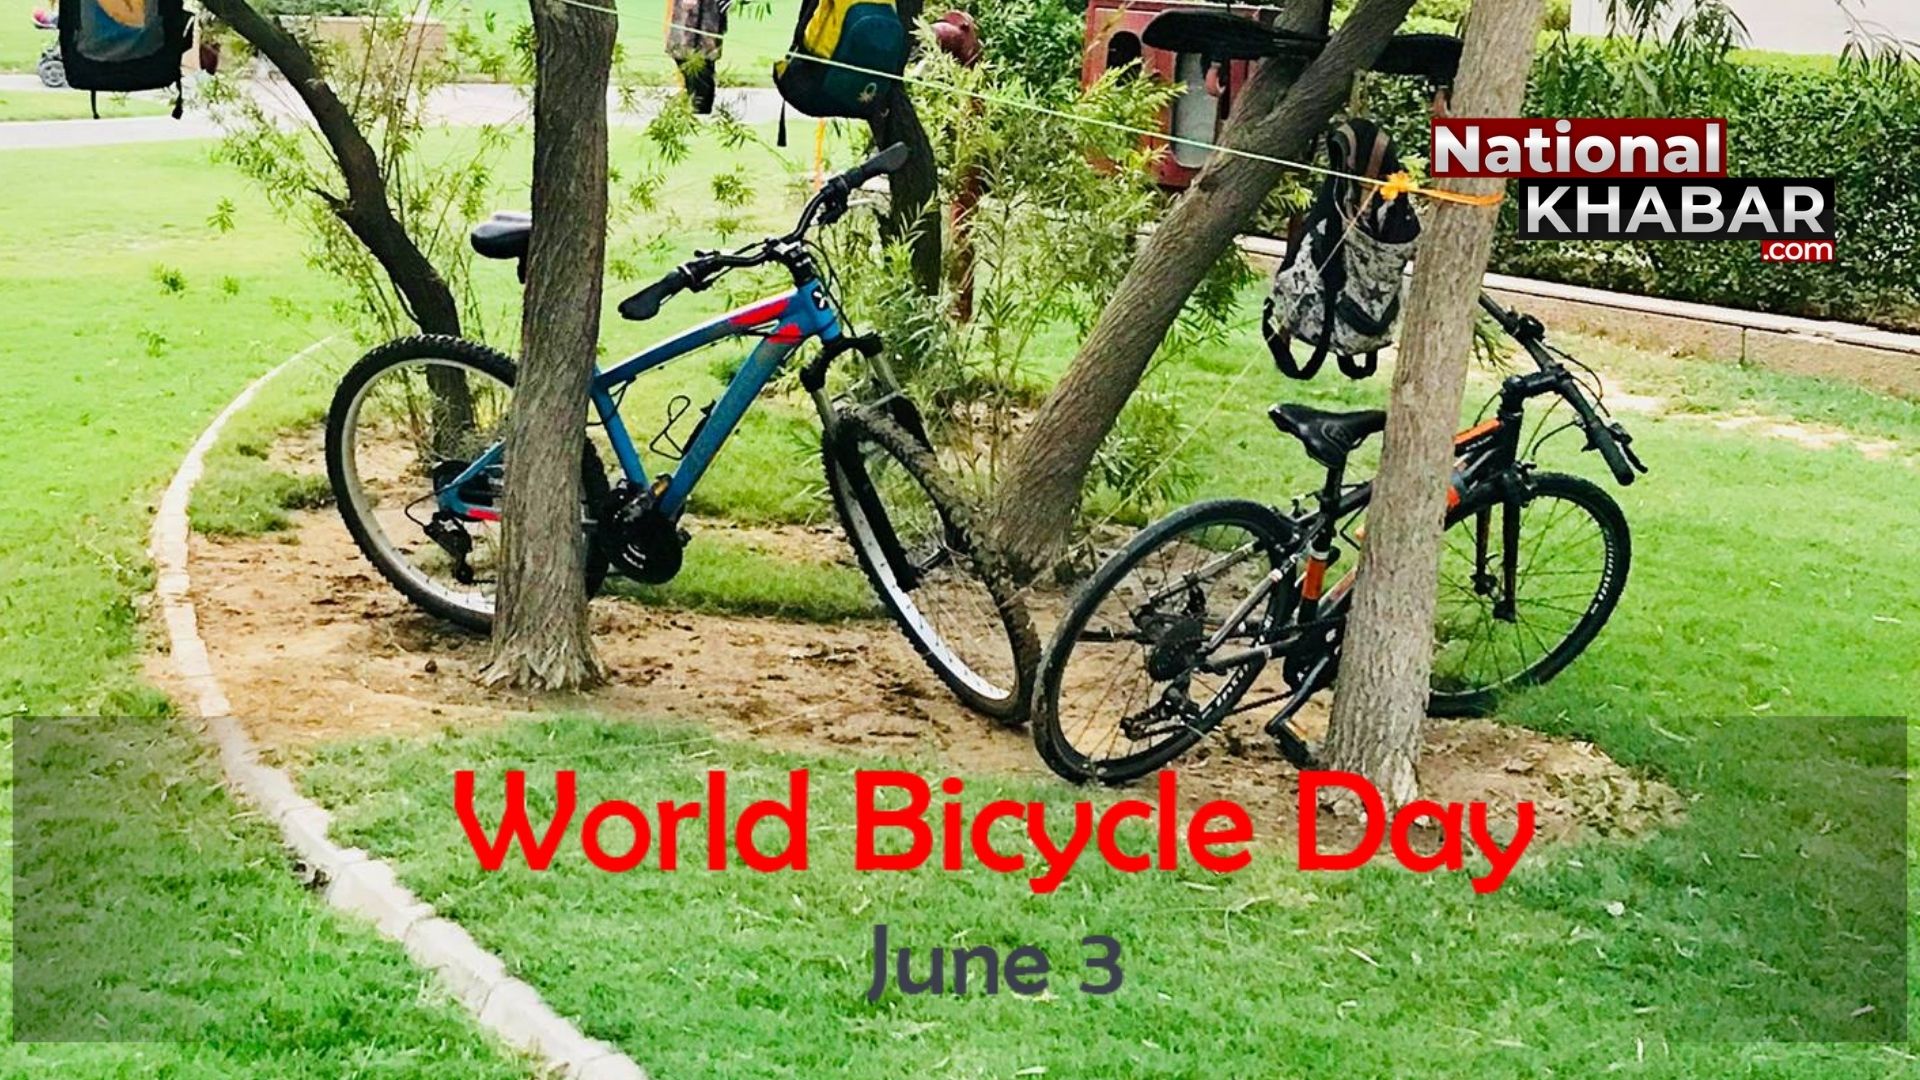 World Cycle Day: सस्ता परिवहन साधन ही नहीं, स्वस्थ रखने का जरिया भी है; इसलिए साइकिल को समर्पित है 3 जून की तारीख